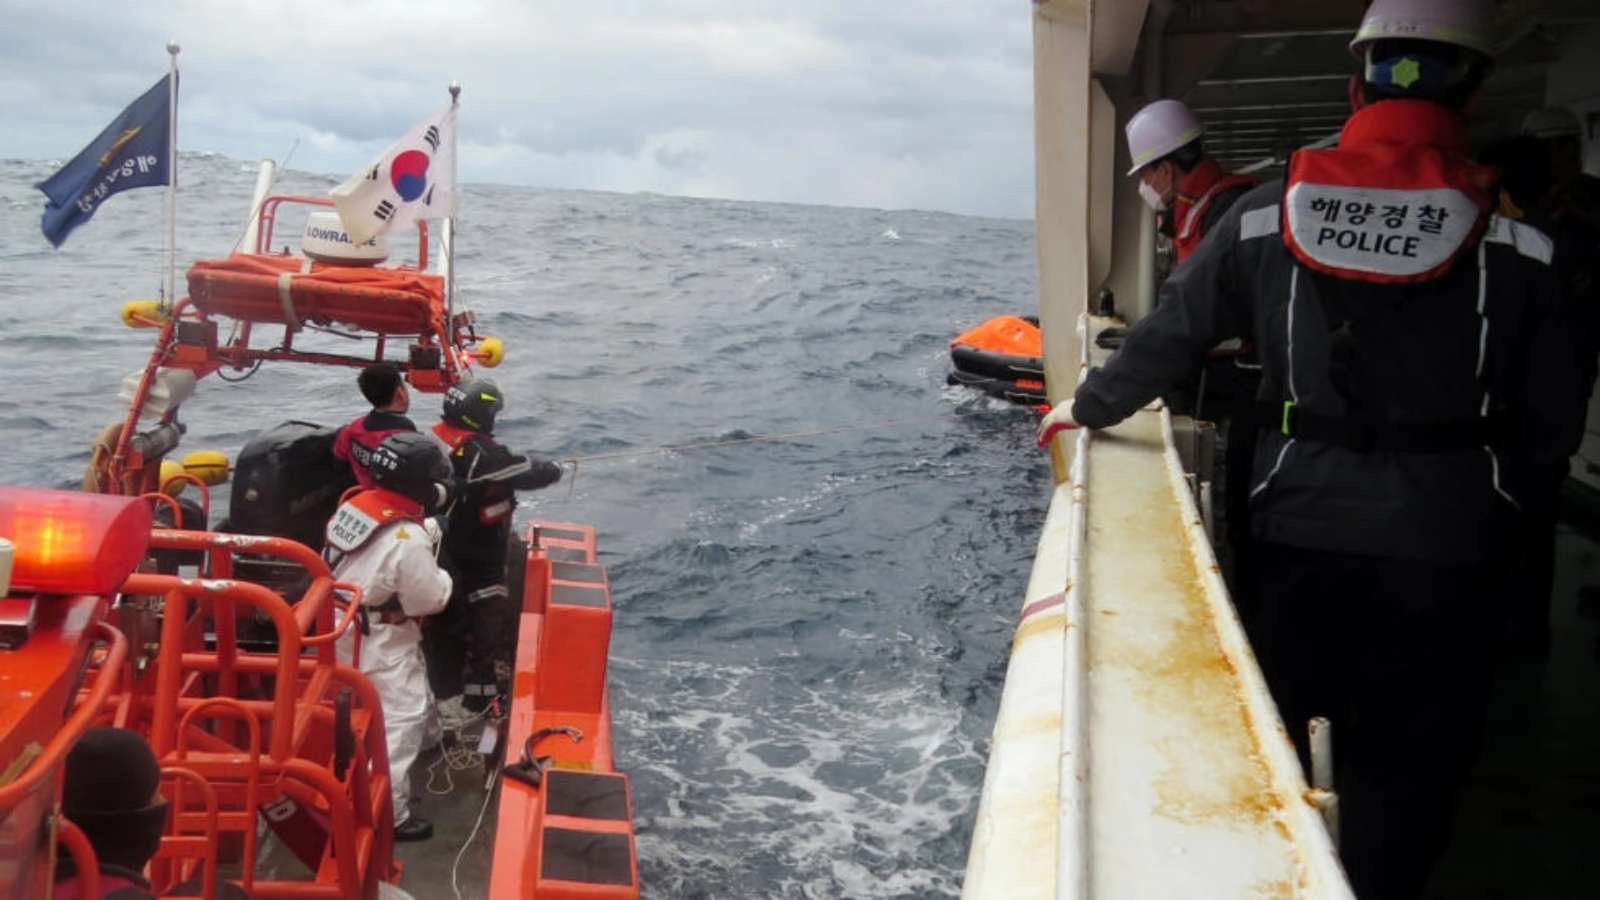 صورة وزعها خفر سواحل كوريا الجنوبية تُظهر قوات من خفر السواحل يبحثون عن مفقودين بعد غرق سفينة شحن في بحر الصين الشرقي في 25 يناير 2023 